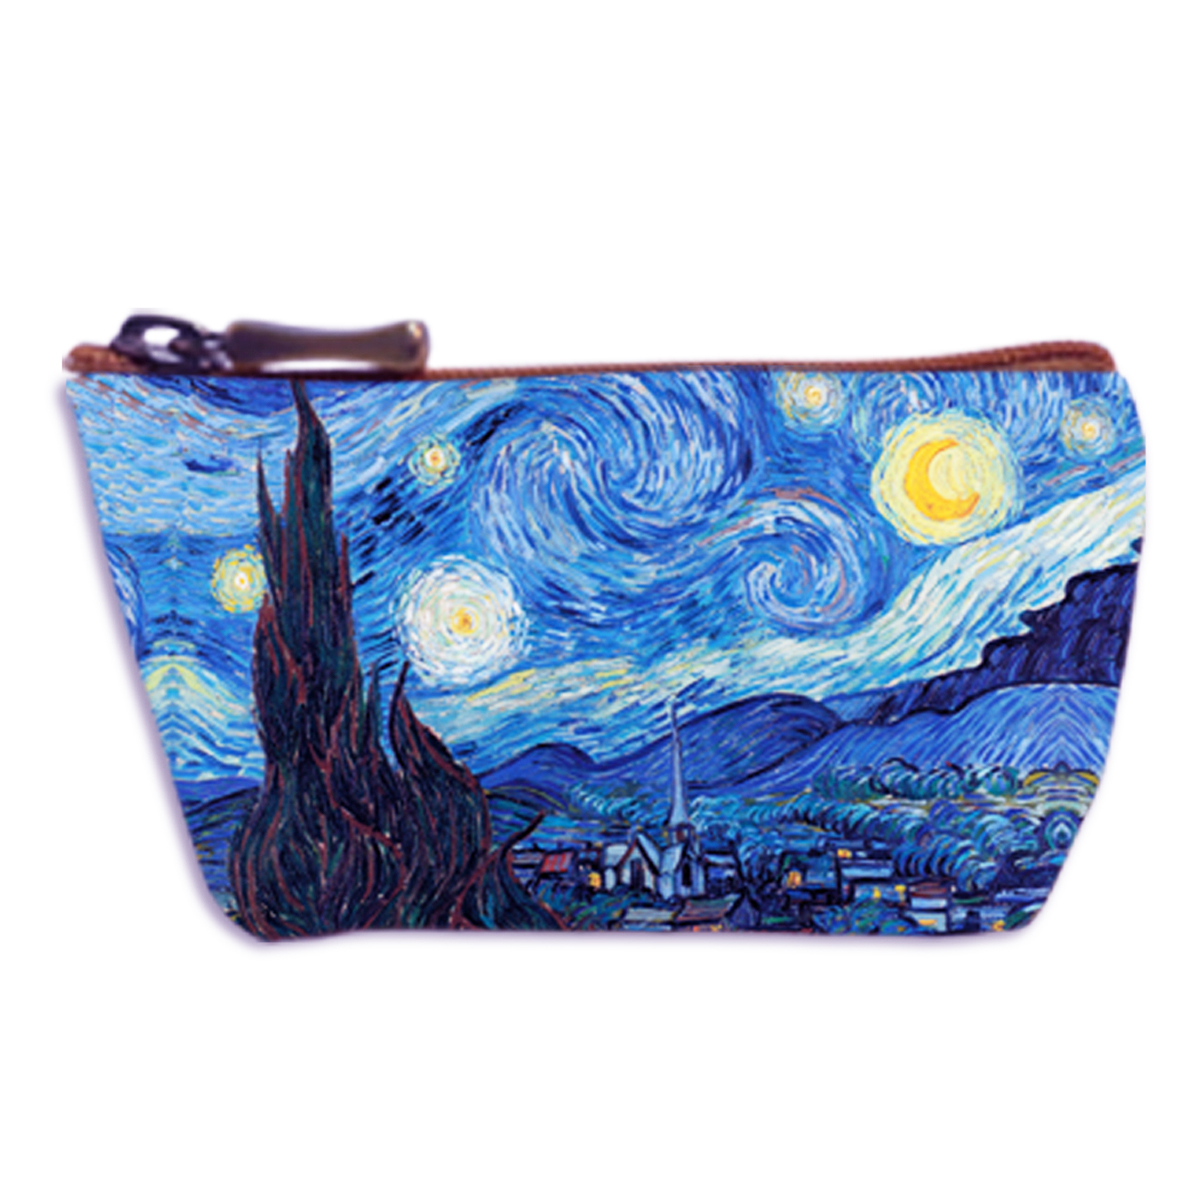 Porte-monnaie artisanal \'Vincent Van Gogh\' bleu (Nuit Etoilée)  - 13x8 cm - [Q6645]